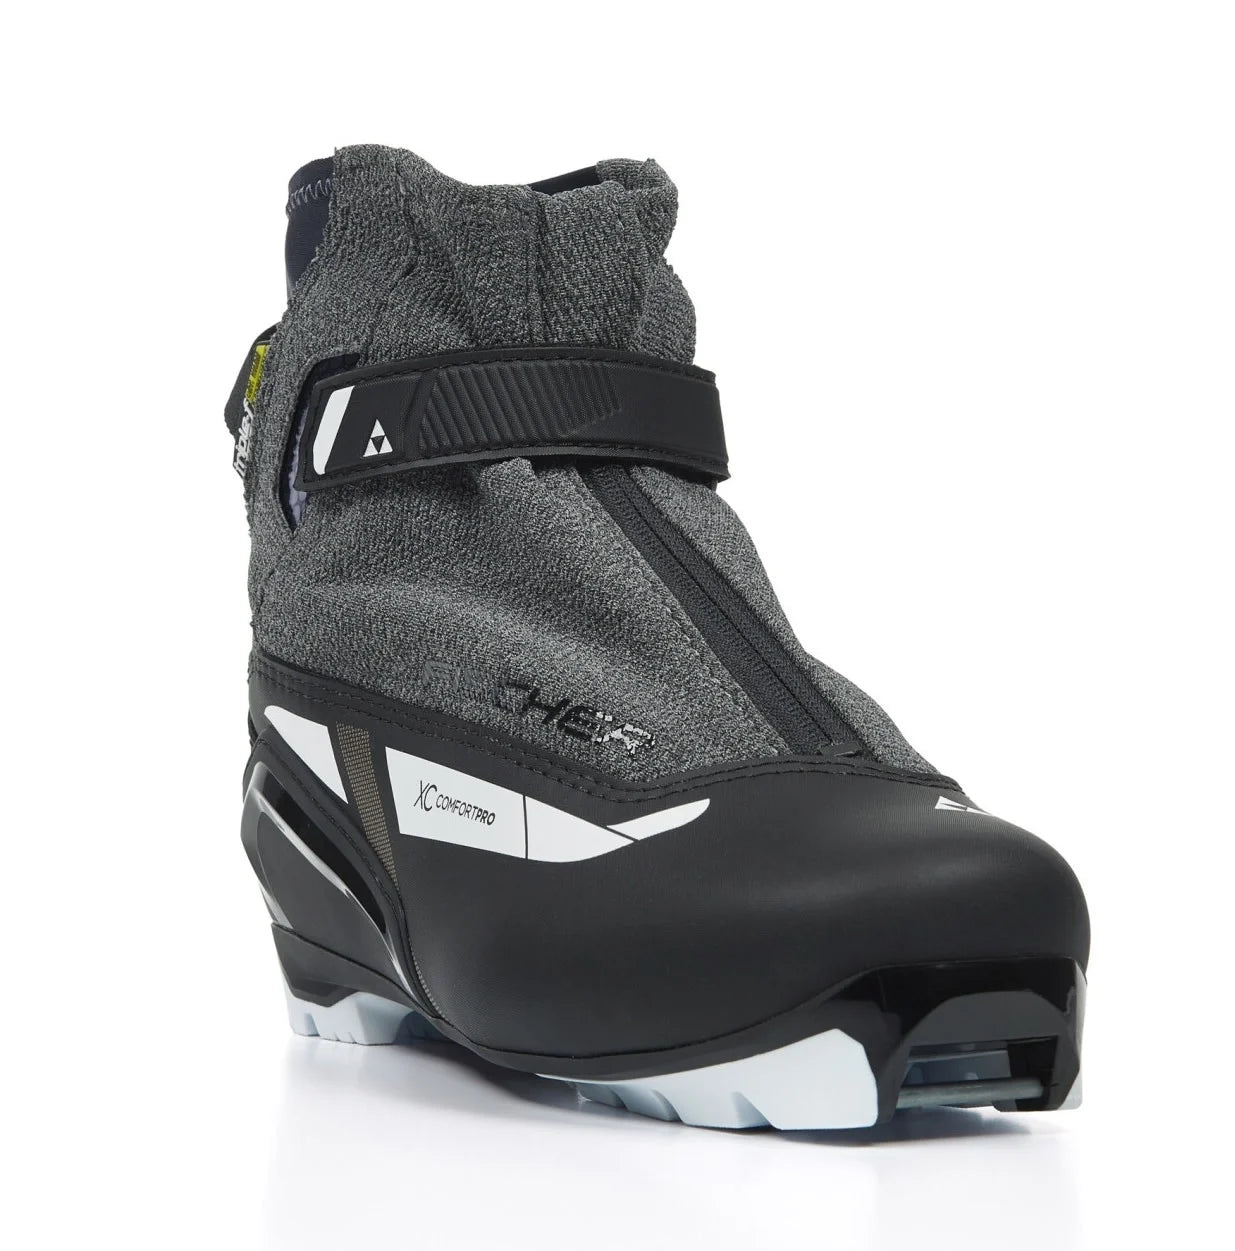 Fischer XC Comfort Pro WS Nordic Ski Boots